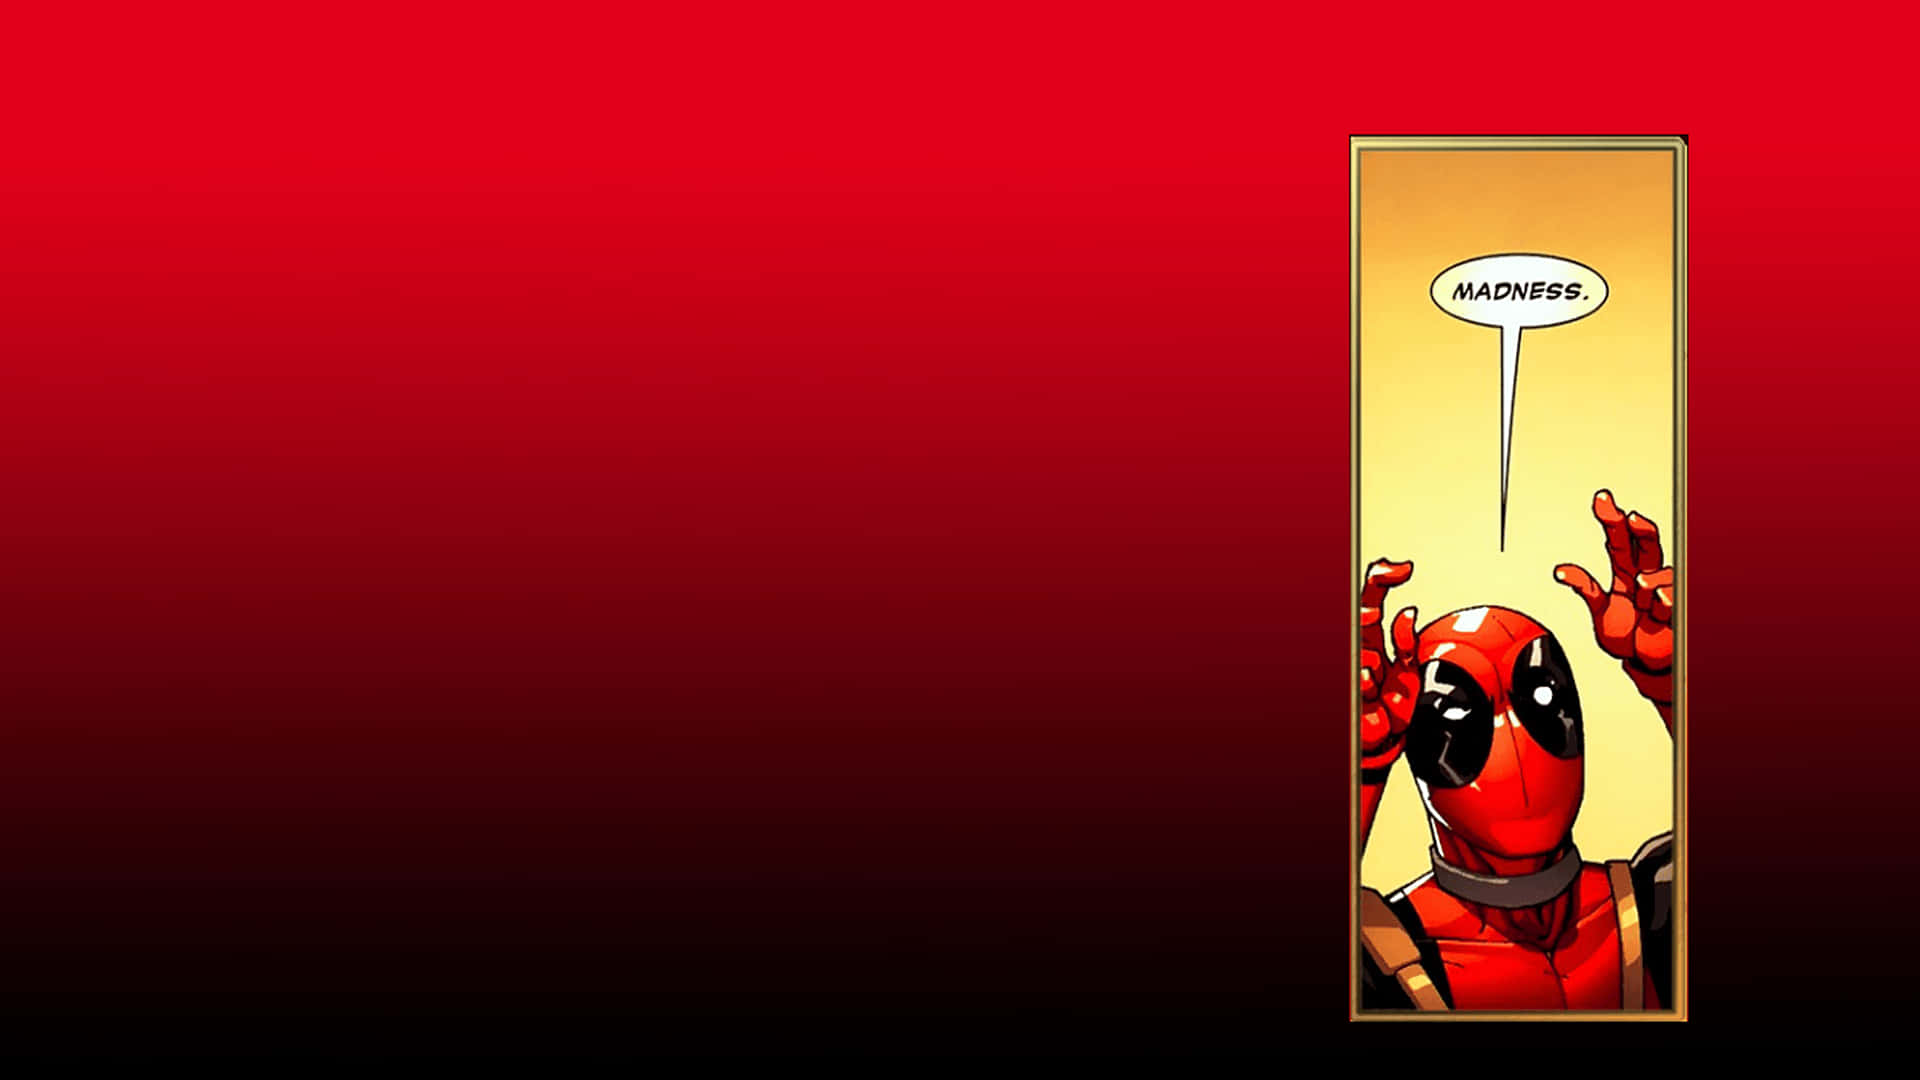 deadpooldeadpool artdeadpool wallpaperdeadpool funny deadpool  tattoodeadpool memes  Deadpool artwork Deadpool comic Marvel future  fight